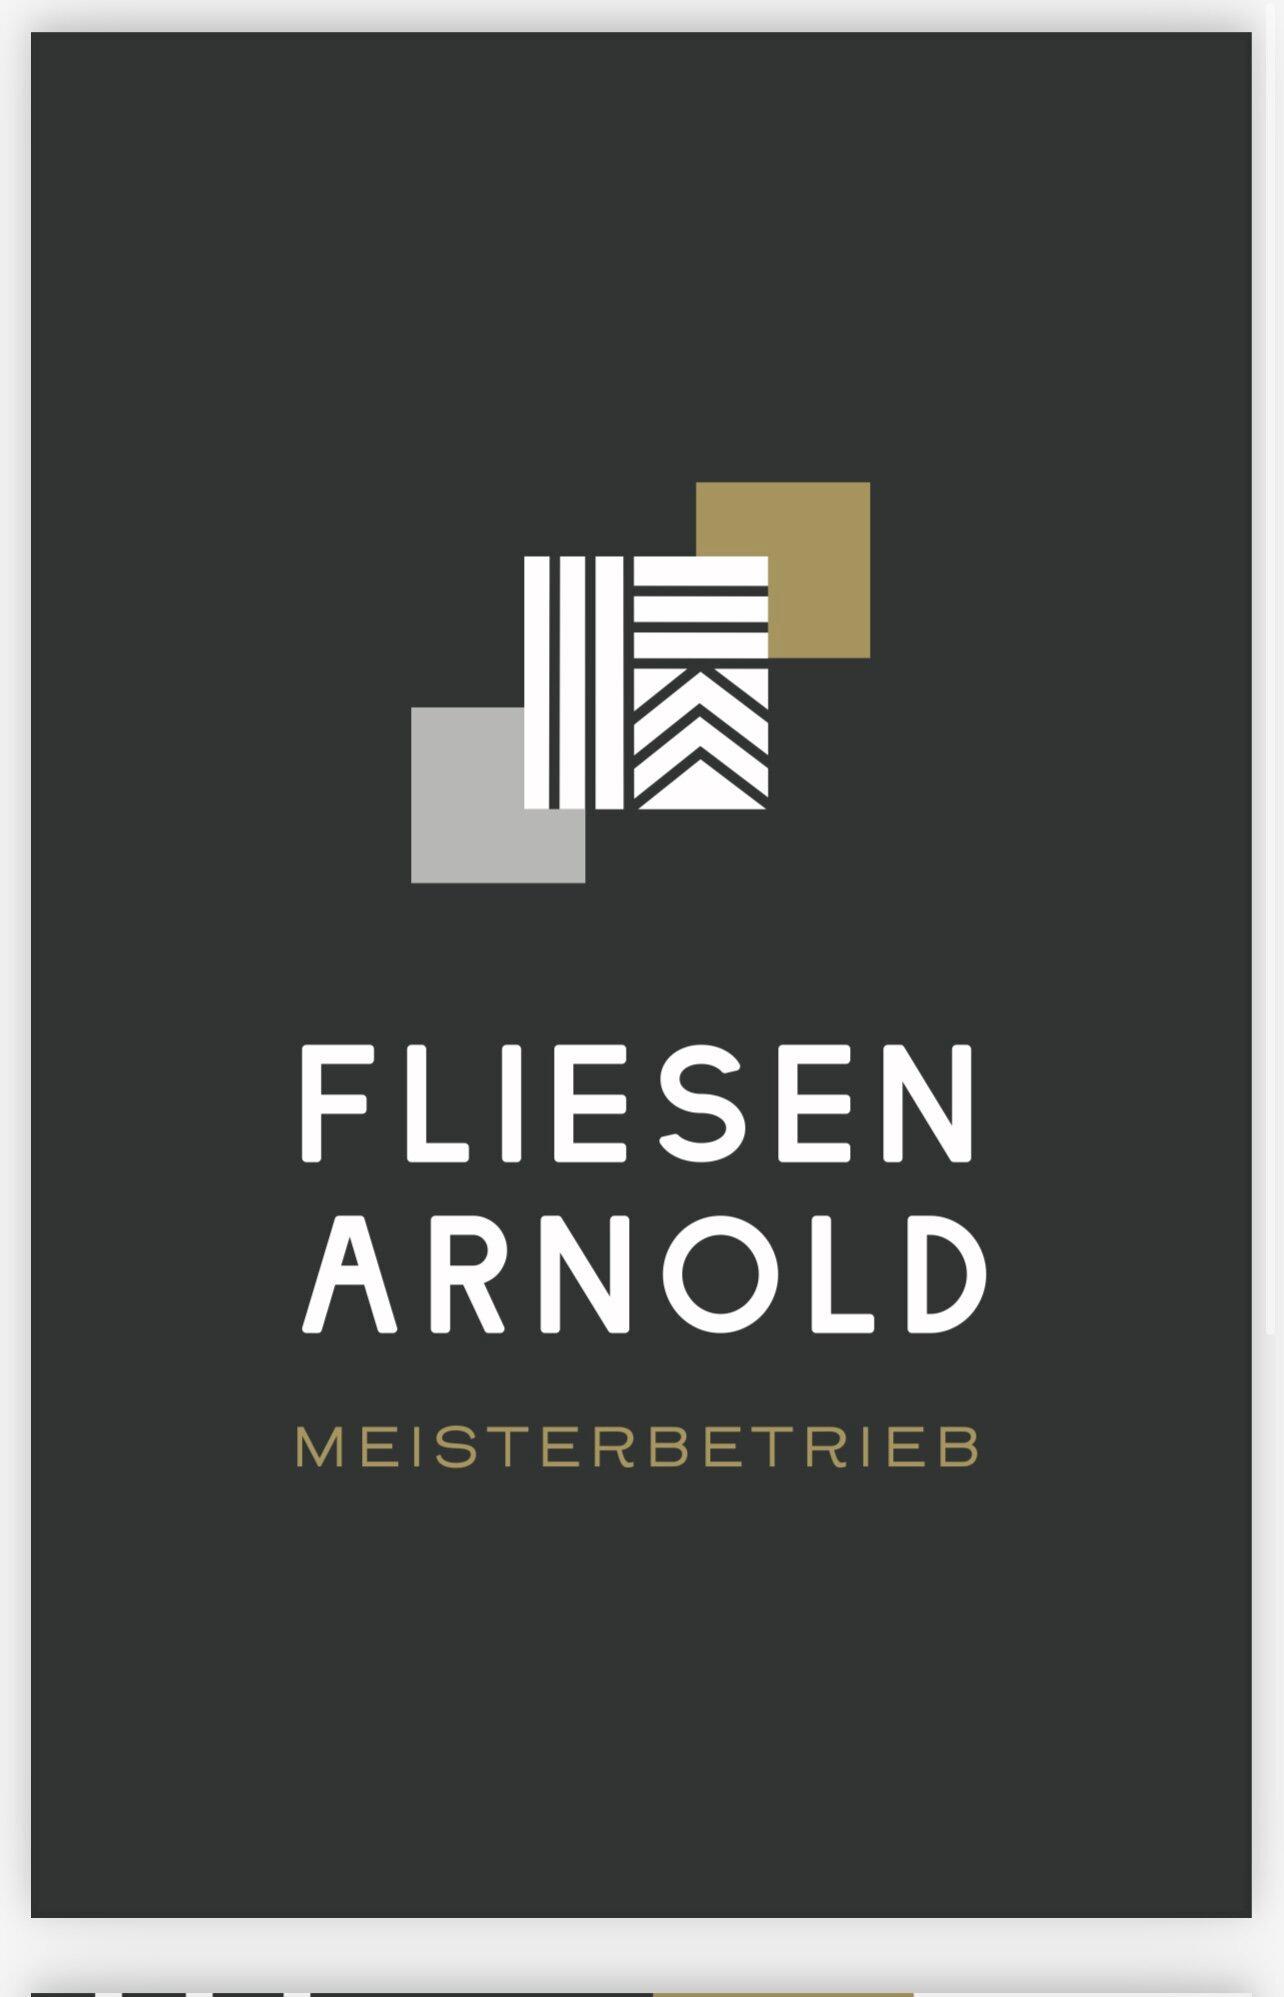 Logo Fliesen Arnold Meisterbetrieb